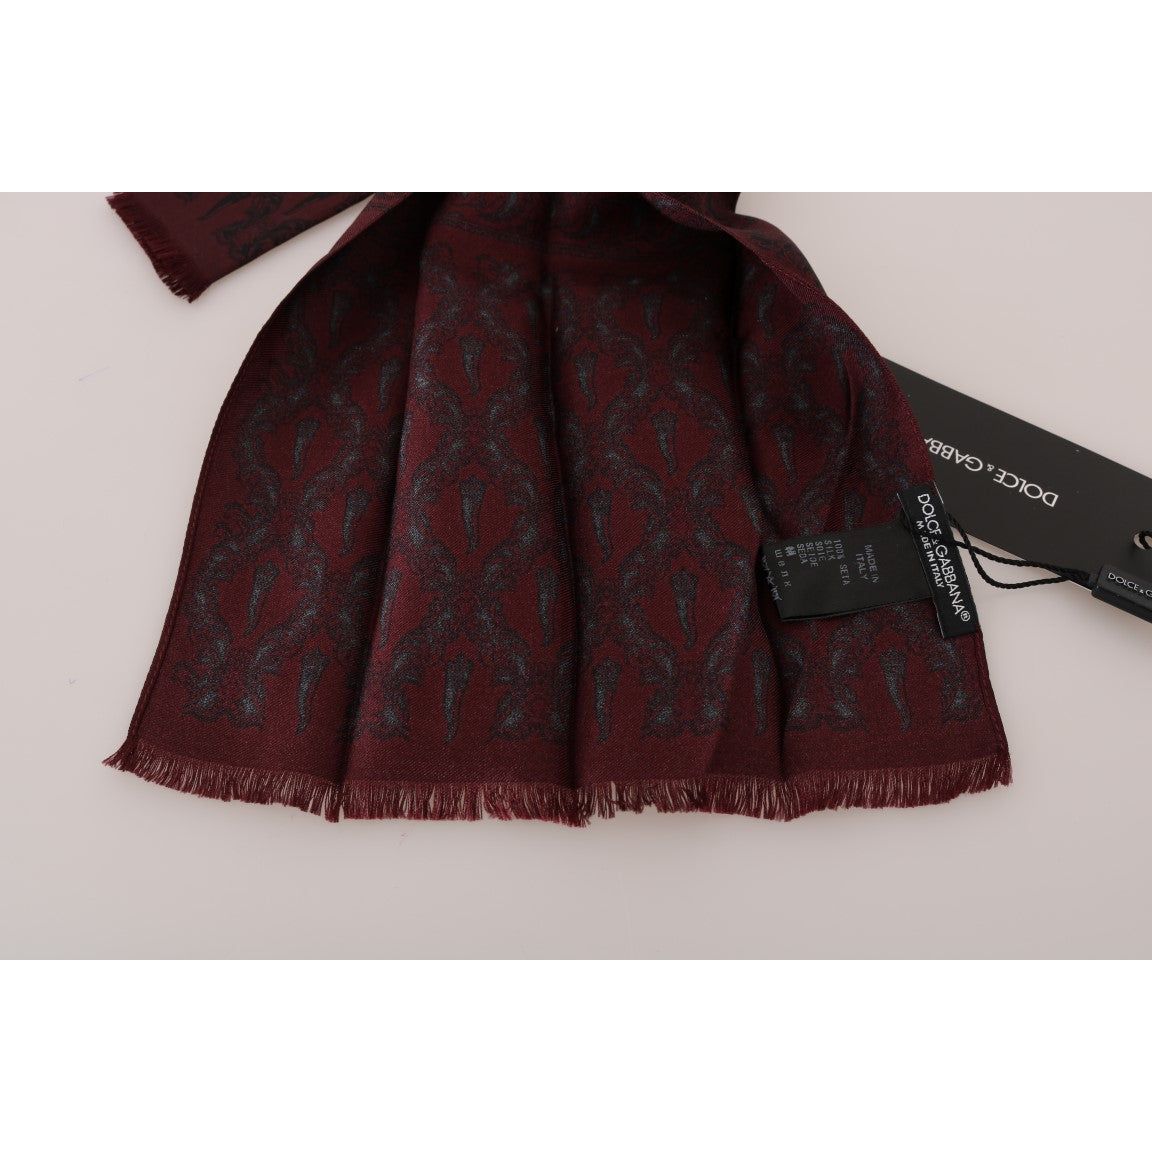 Dolce & Gabbana Silk Bordeaux Crown Chili Print Mens Scarf bordeaux-silk-crown-chili-scarf Silk Scarves 517984-bordeaux-silk-crown-chili-scarf-4.jpg